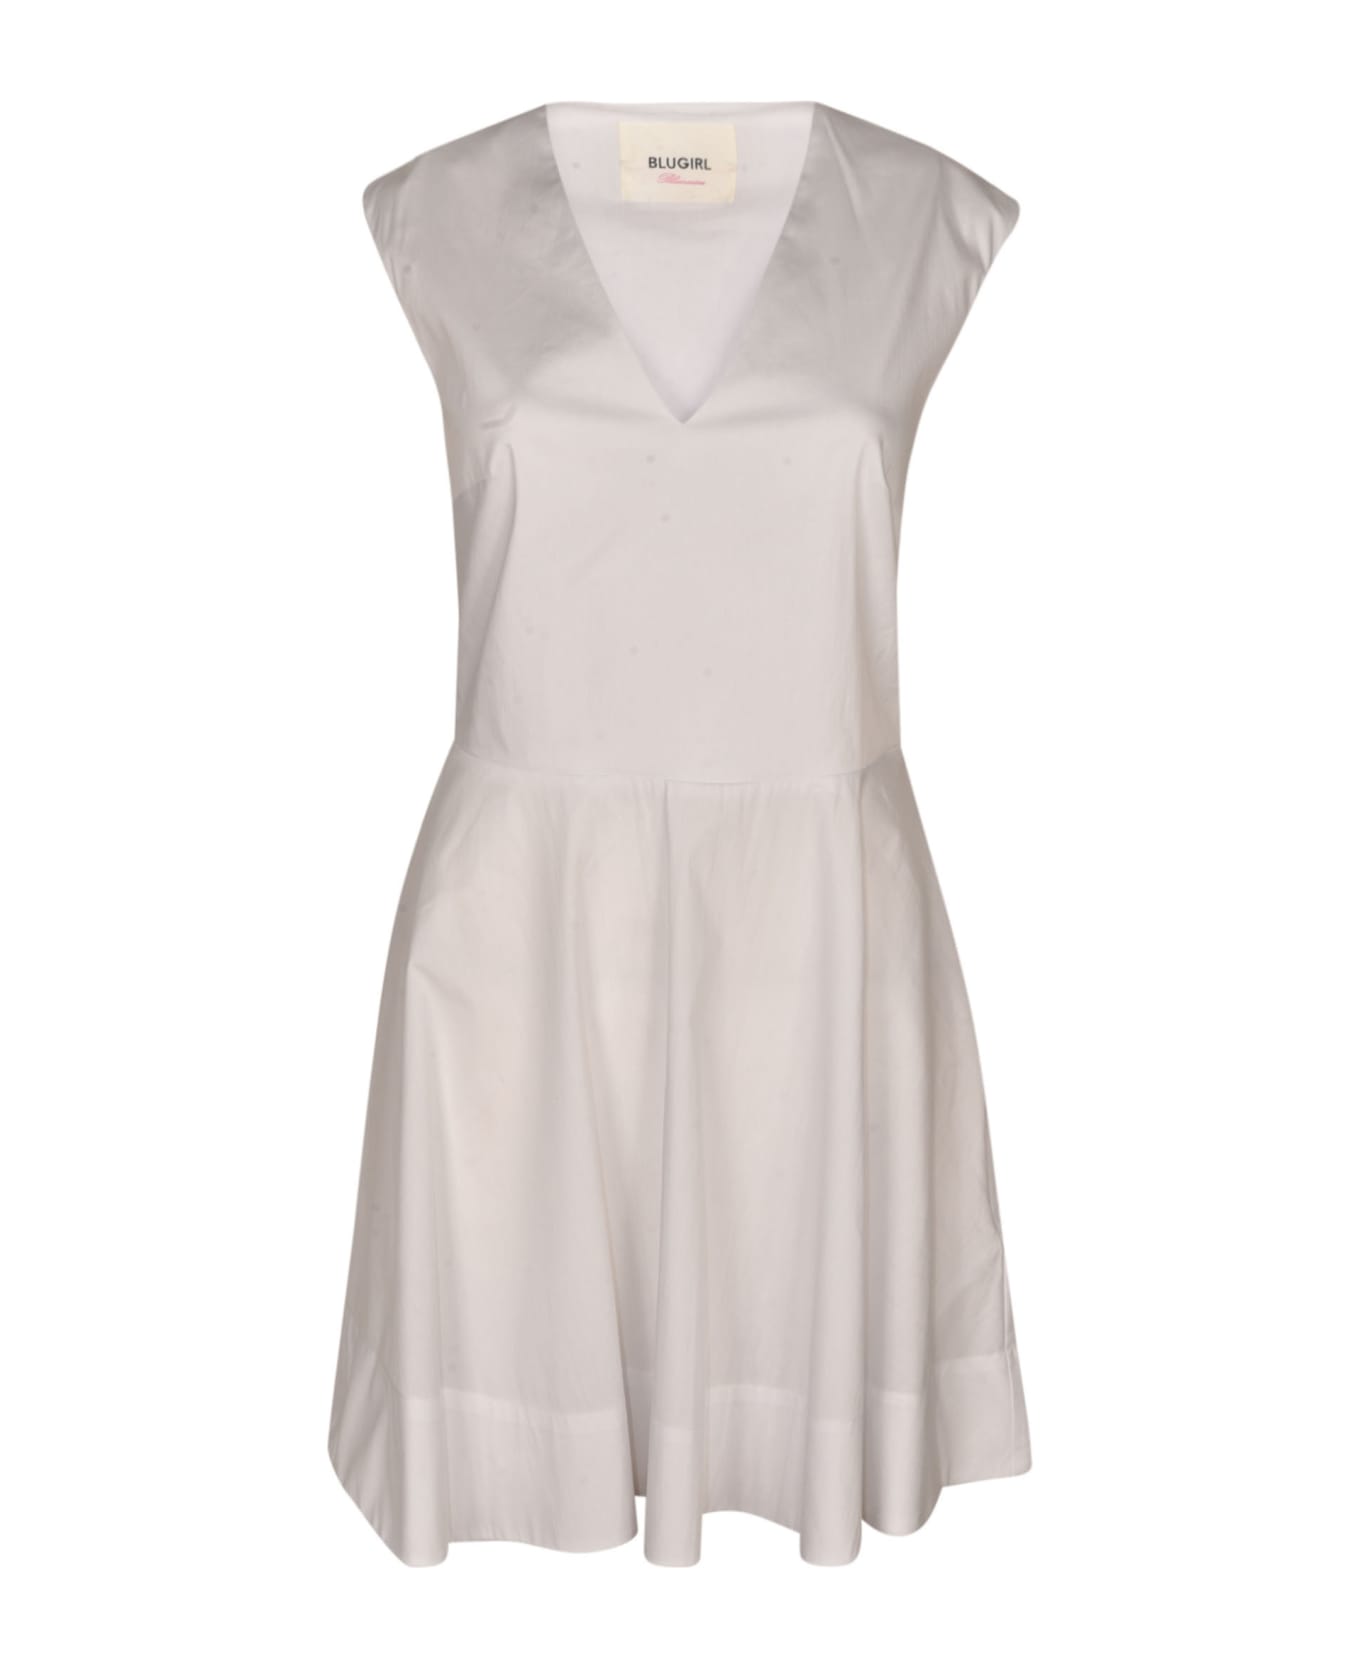 Blugirl V-neck Sleeveless Flare Dress - White